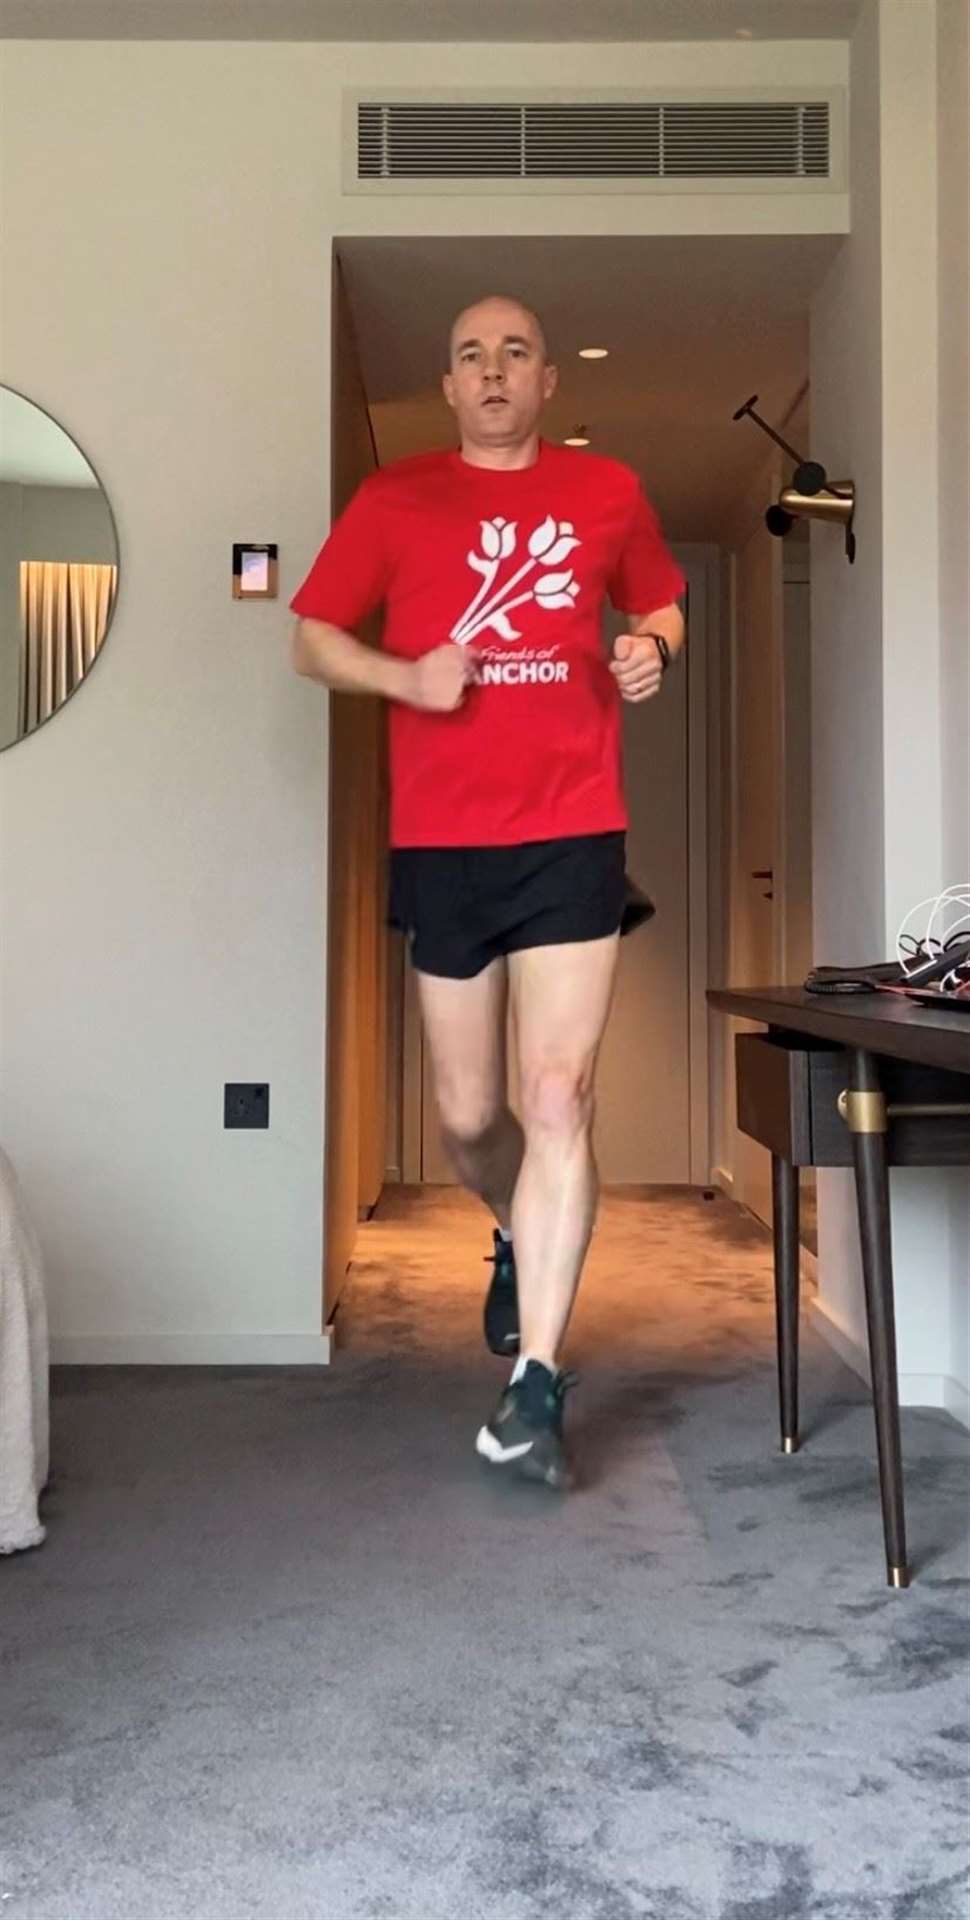 Matt clocking up a 10k run in his London hotel room.